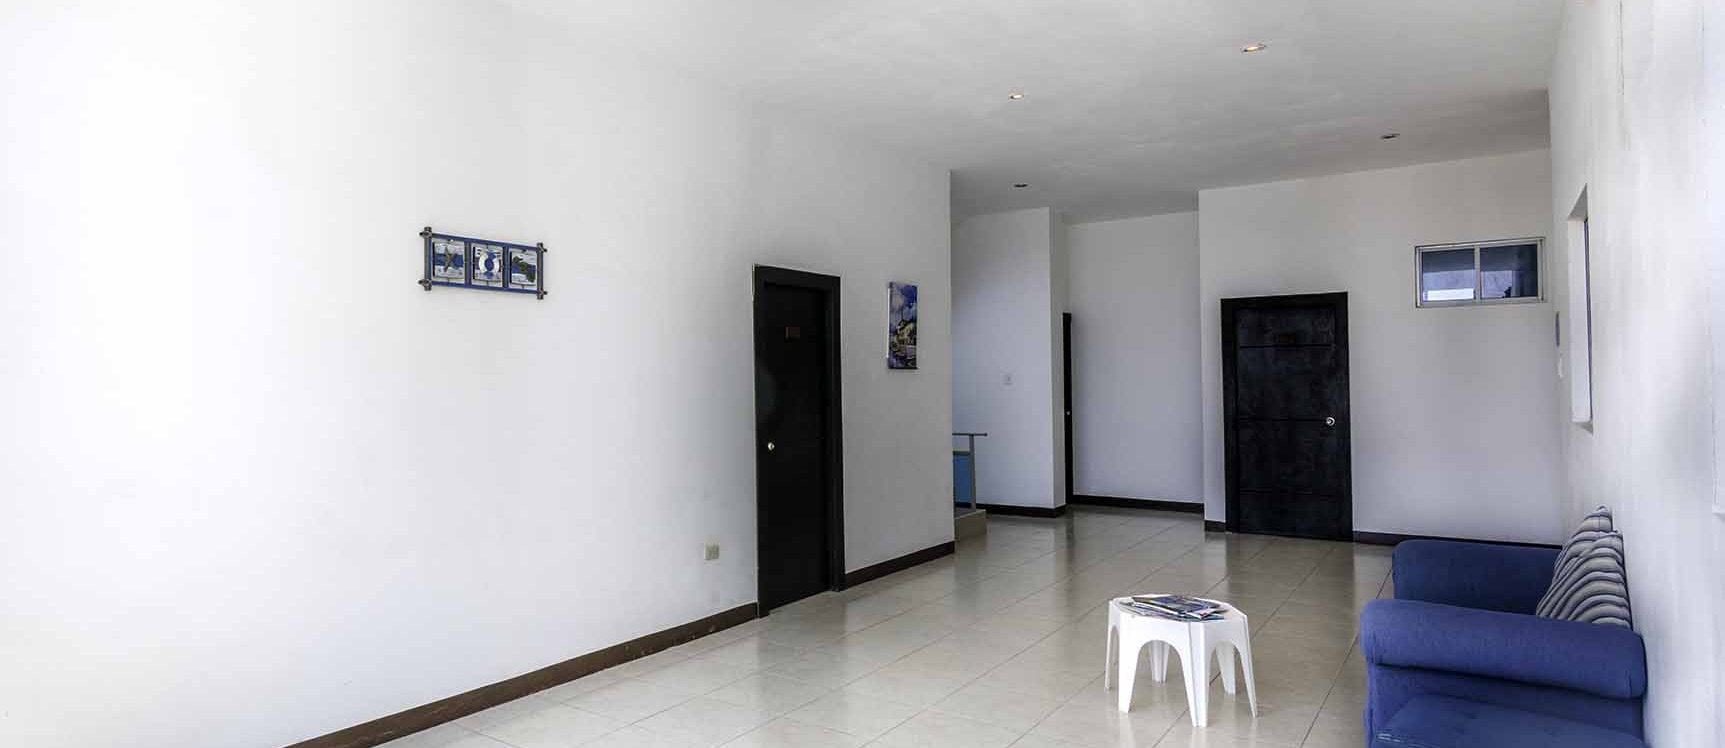 GeoBienes - Edificio en venta en Salinas - Santa Elena - Plusvalia Guayaquil Casas de venta y alquiler Inmobiliaria Ecuador